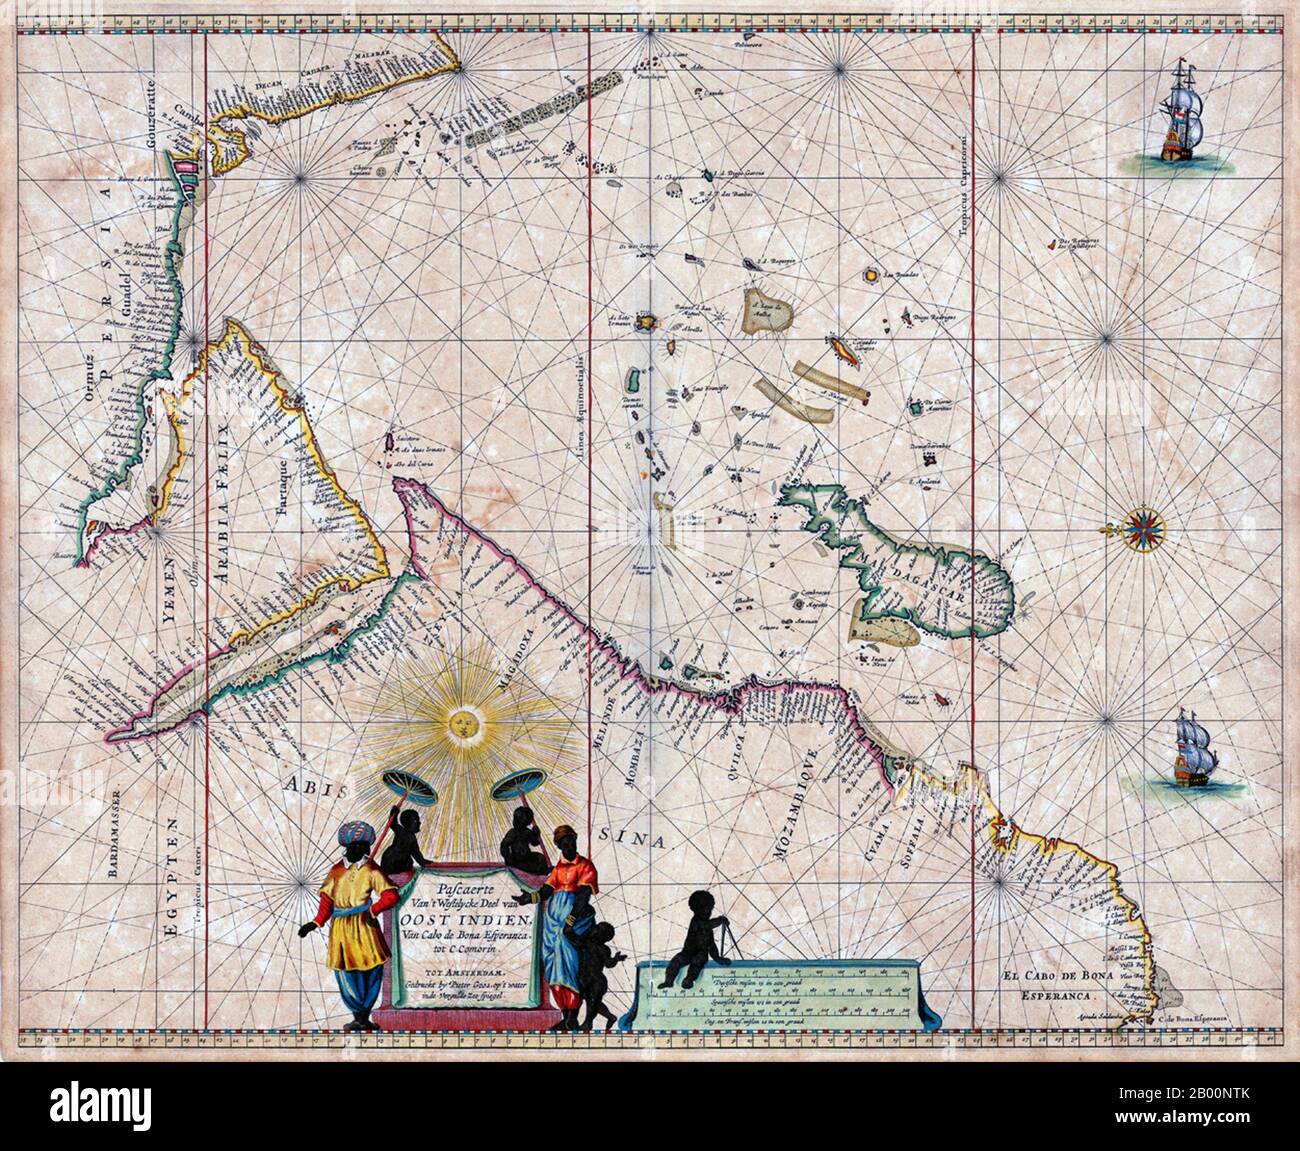 Niederlande: Eine Karte von Arabien und dem Indischen Ozean, Amsterdam, Pieter Goos (1616-1675), 1666. Pieter Goos (1616–1675) war ein niederländischer Kartograph, Kupferstich-Kupferstecher, Verleger und Buchhändler. Er war der Sohn von Abraham Goos (1590–1643), auch Kartograph und Kartenverkäufer. Ab 1666 veröffentlichte Pieter Goos eine Reihe von gut produzierten Atlanten. Stockfoto